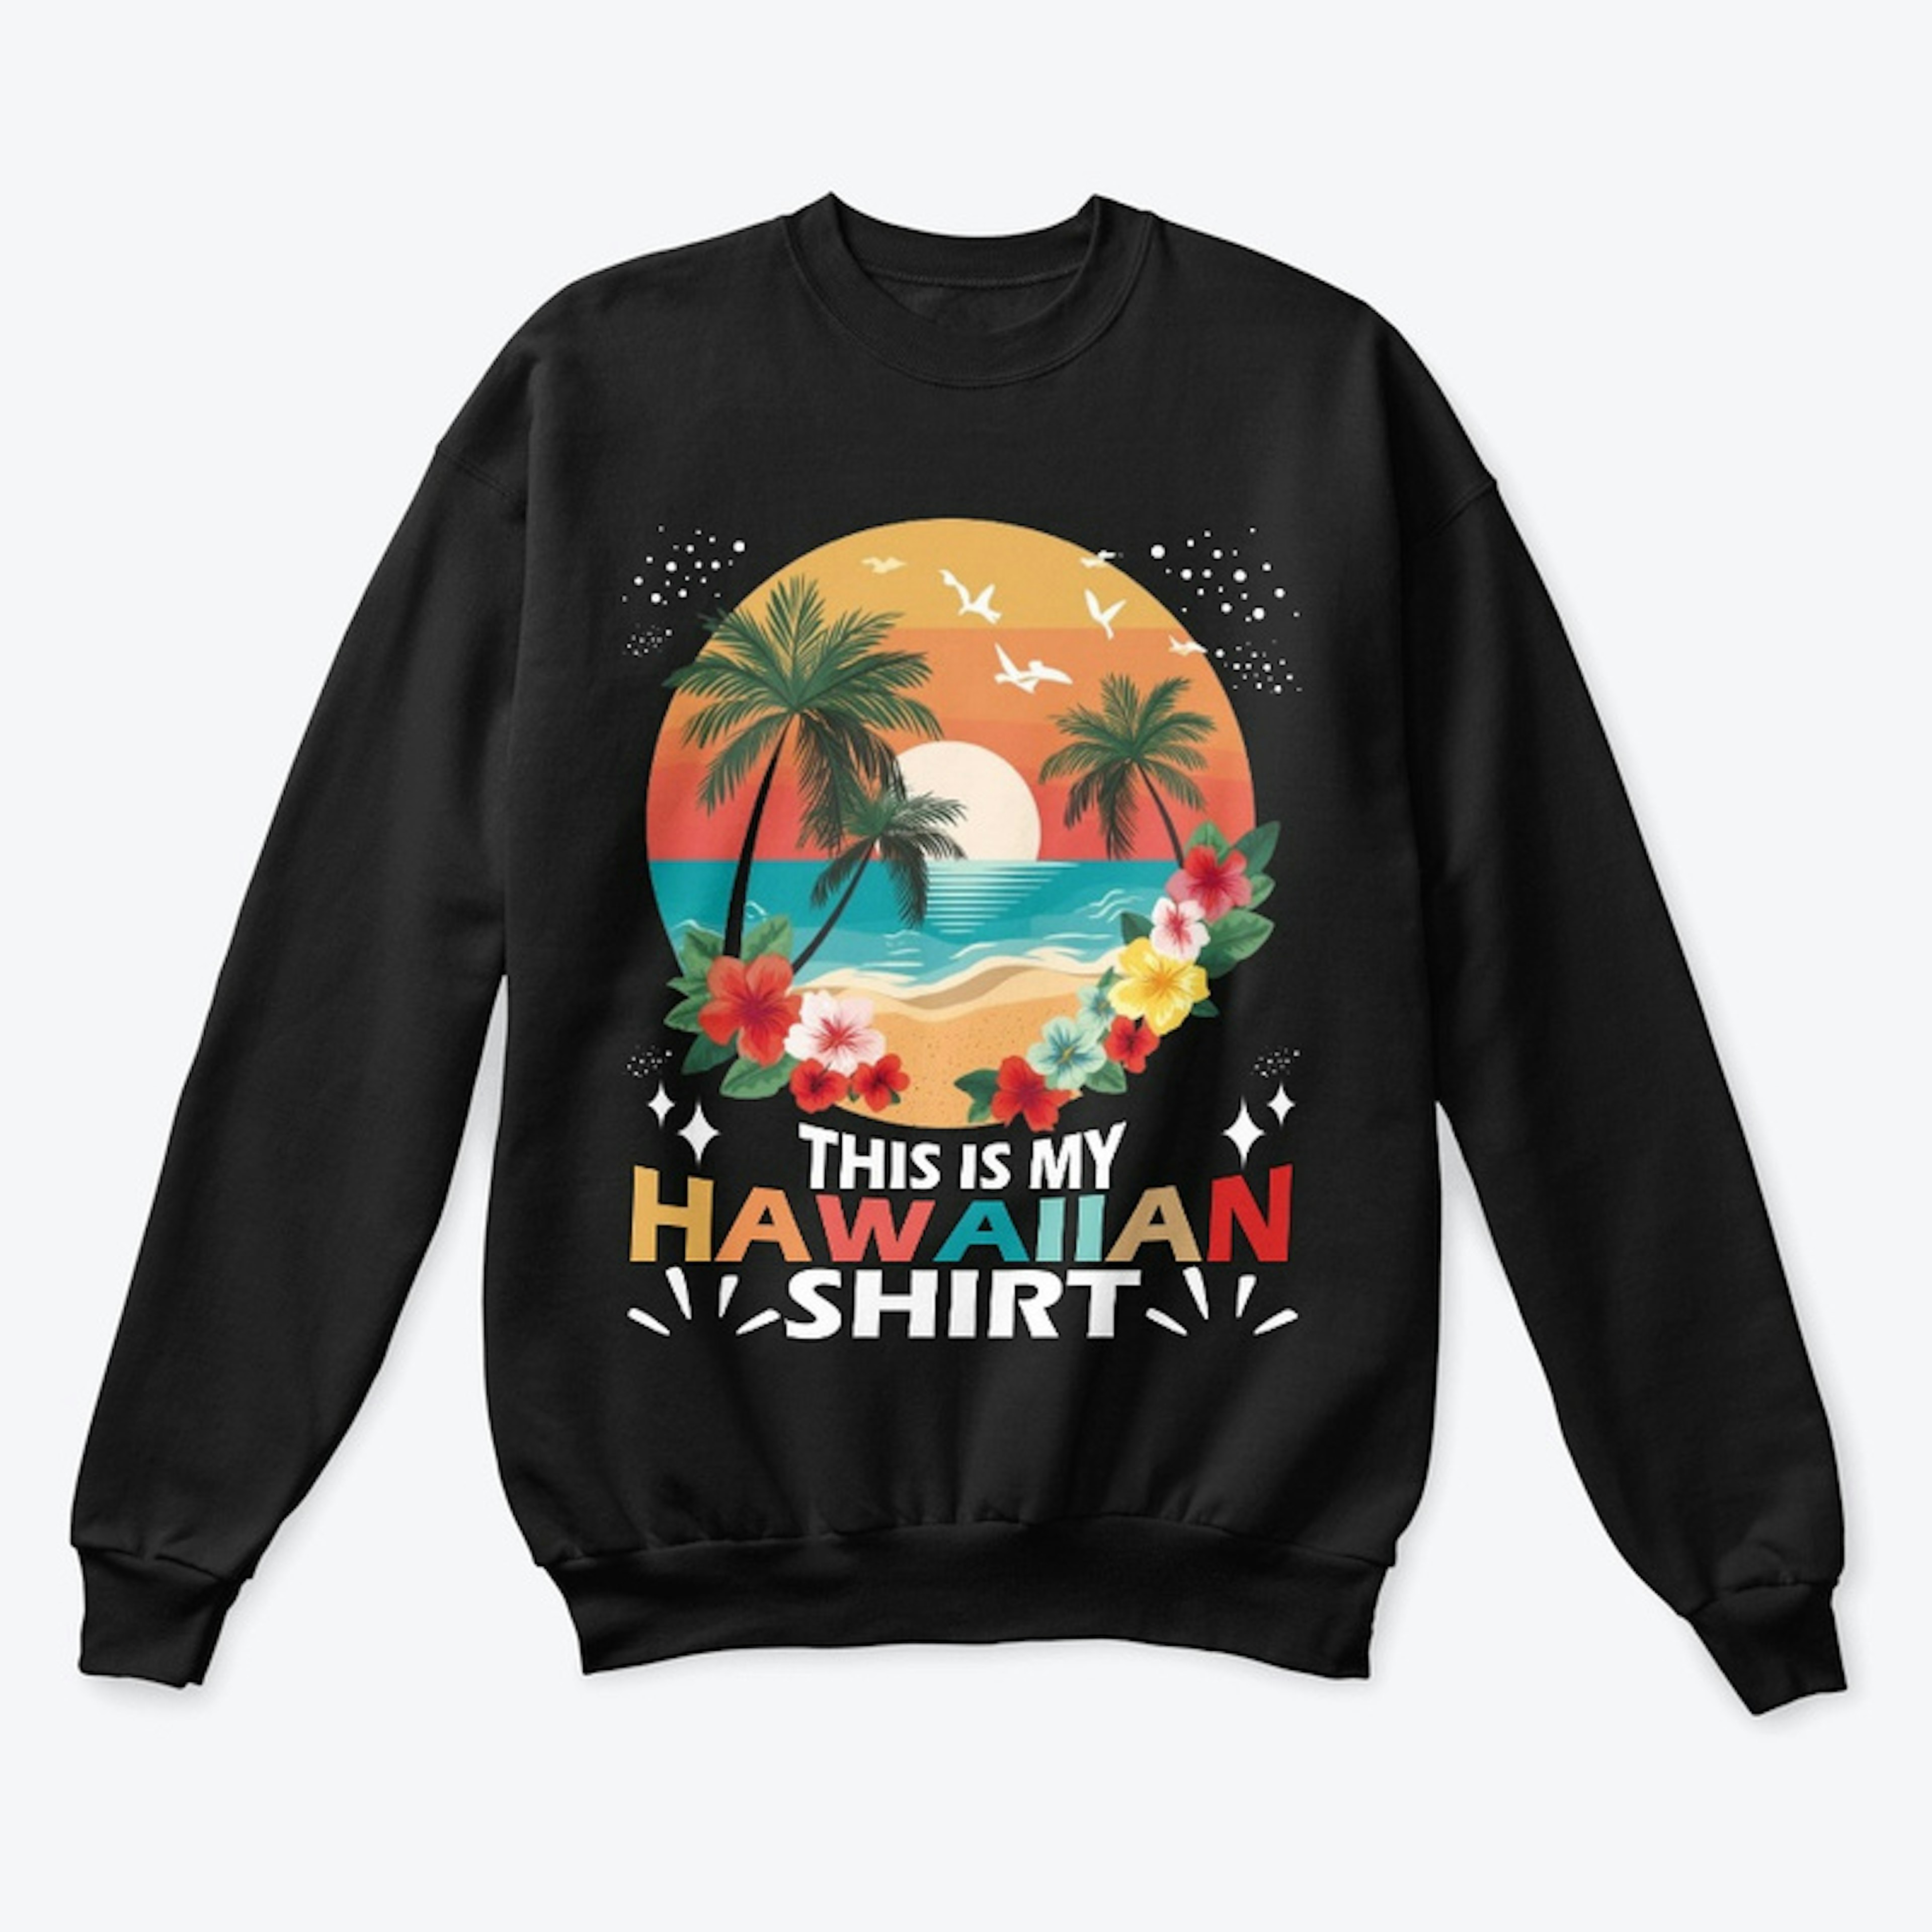 This Is My HAWAIIAN Shirt